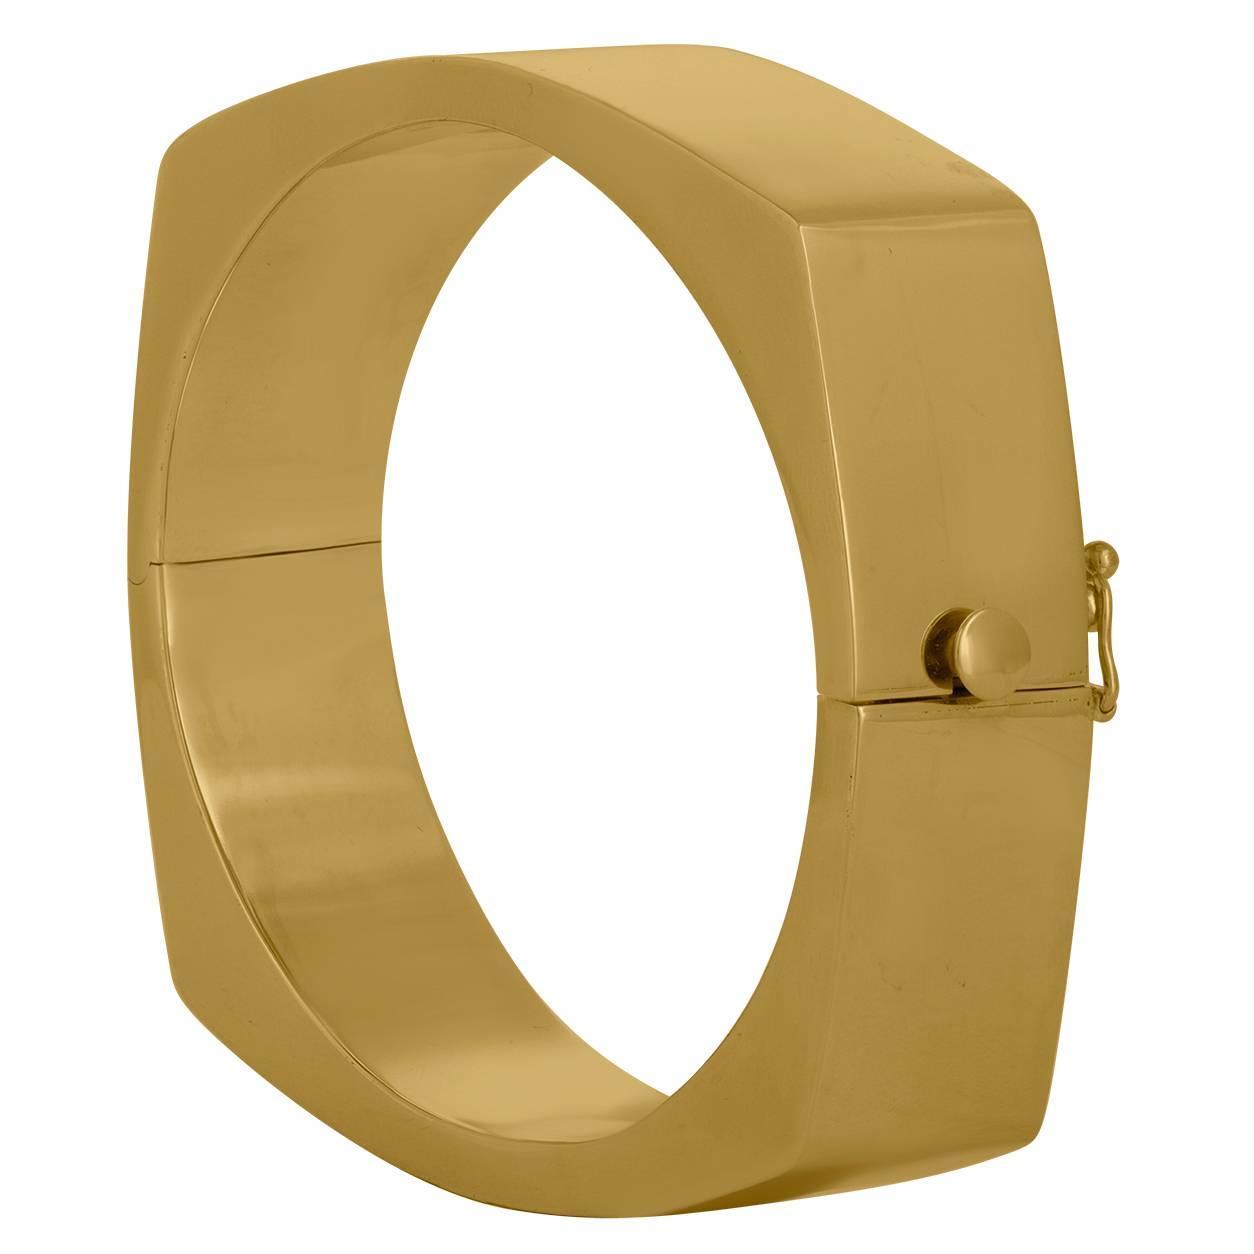 Solid Gold Bangle Bracelet For Sale at 1stdibs